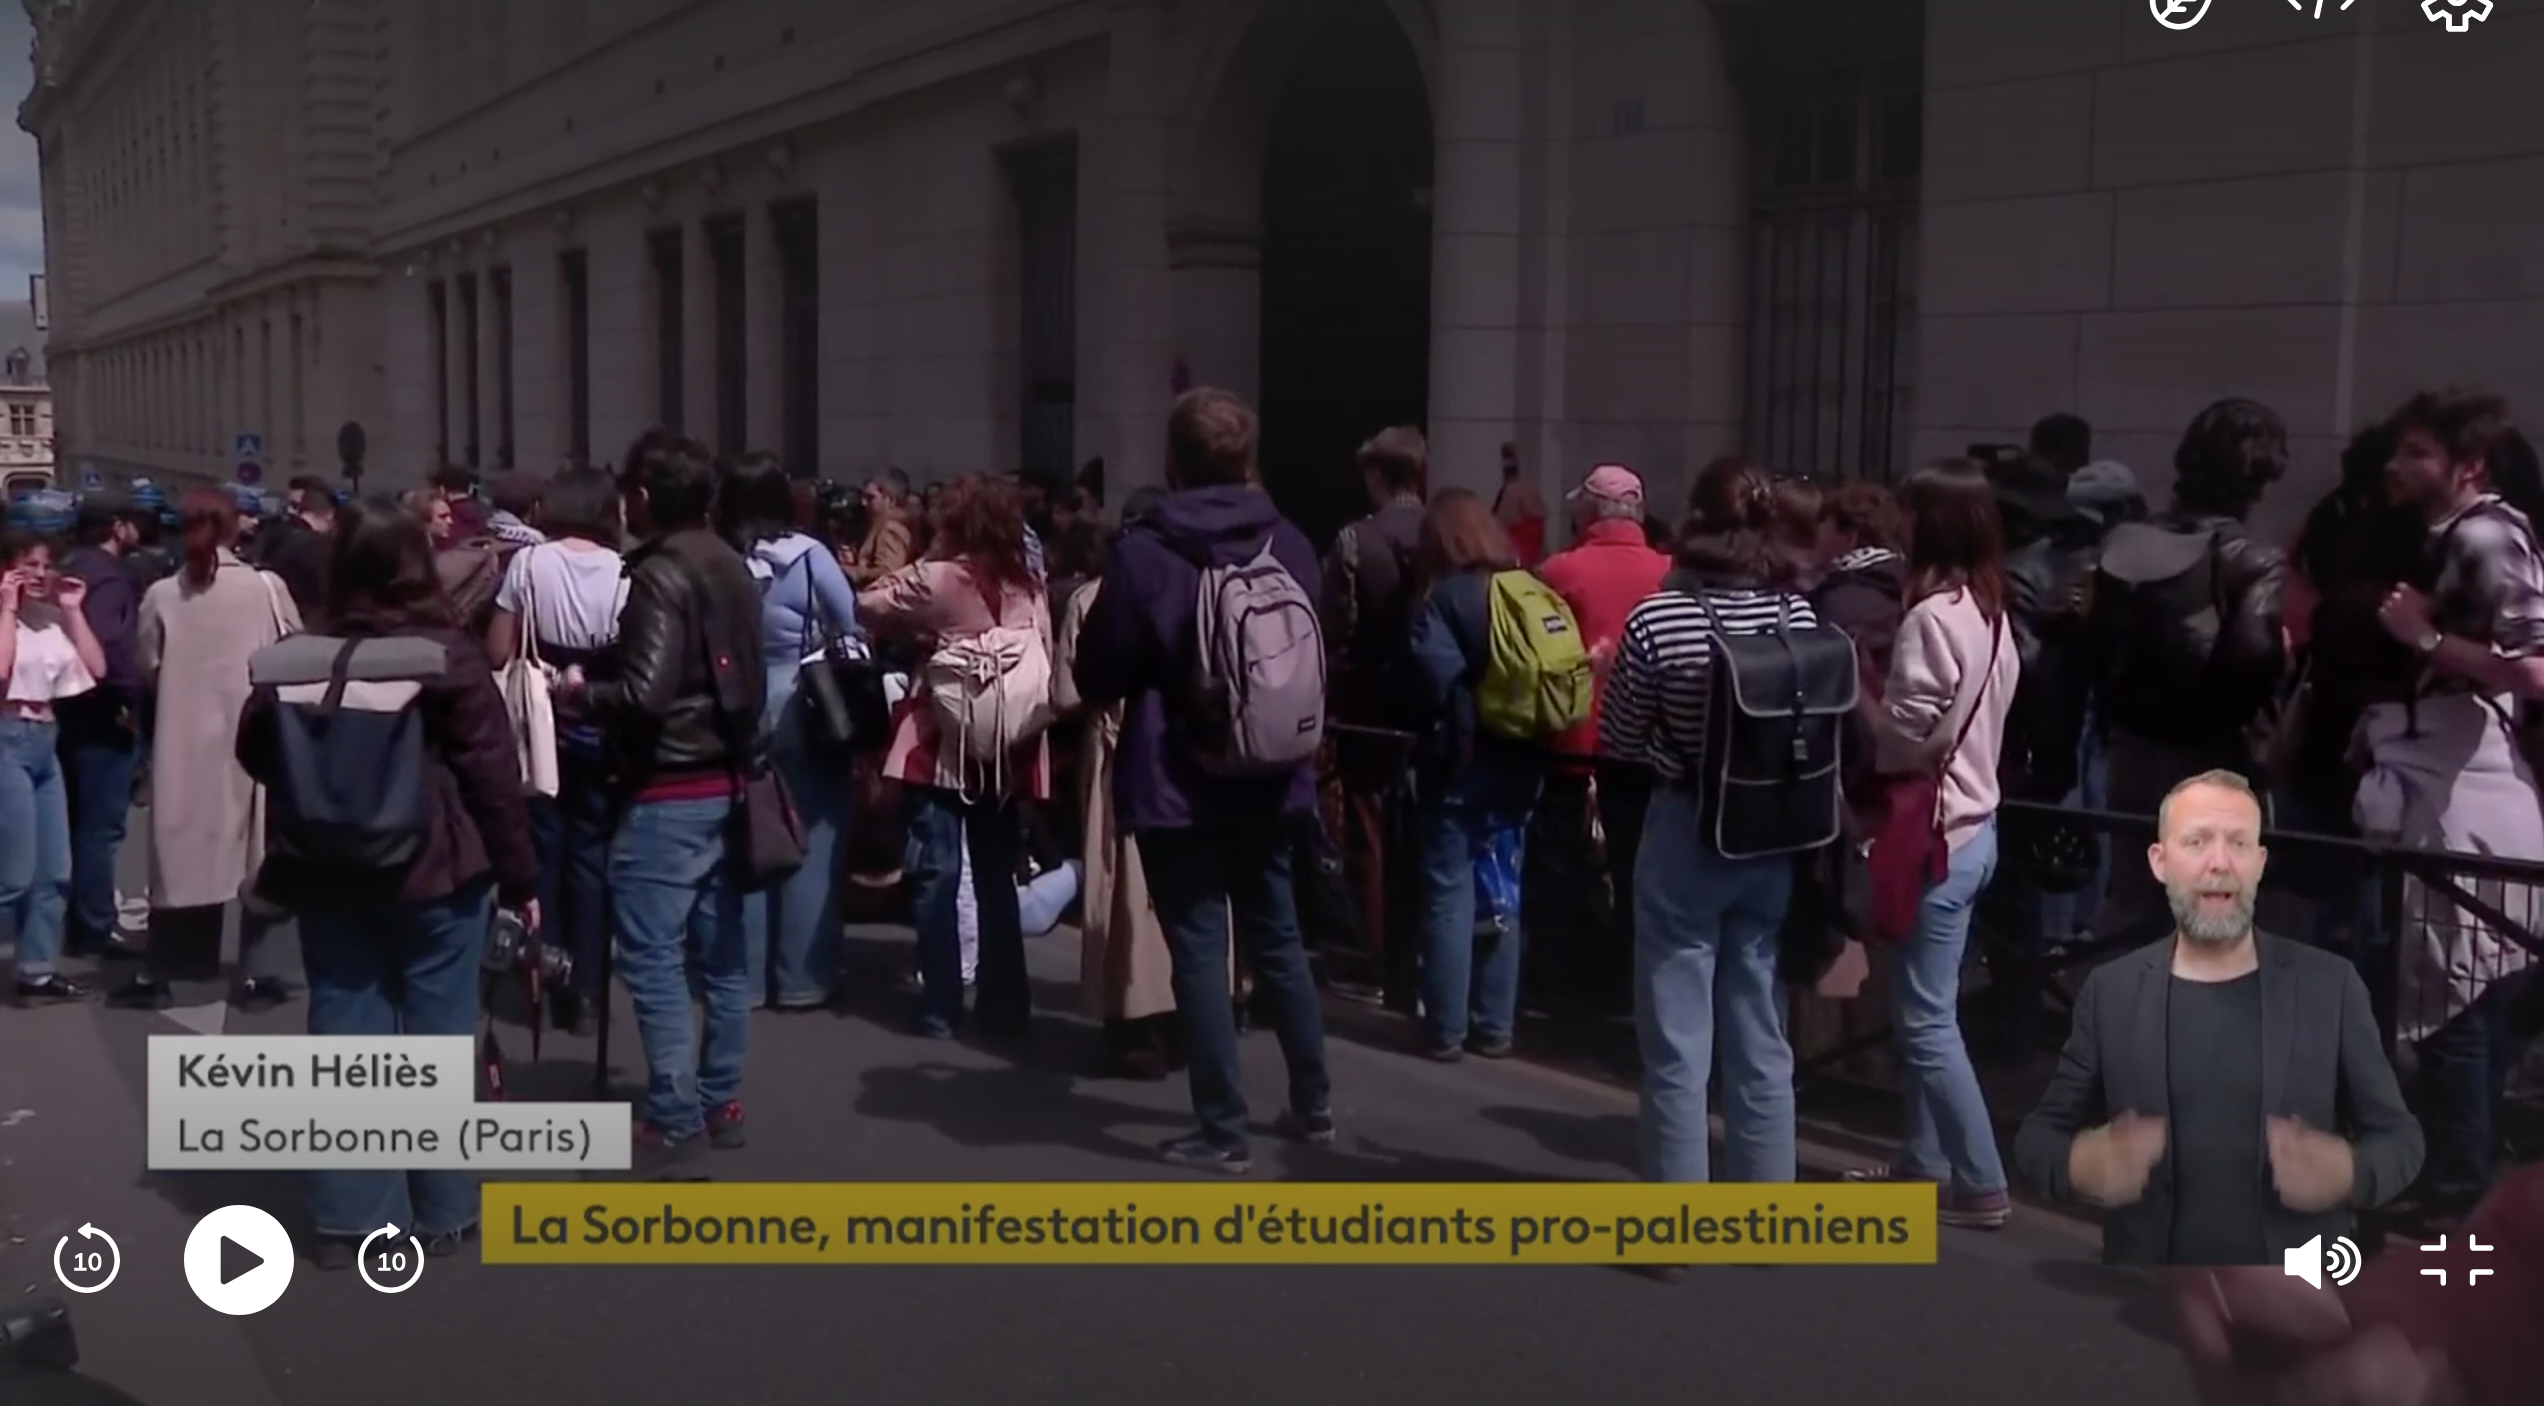 Mobilisation pro-palestinienne : des manifestants ont investi la Sorbonne, les forces de l'ordre interviennent pour évacuer les lieux